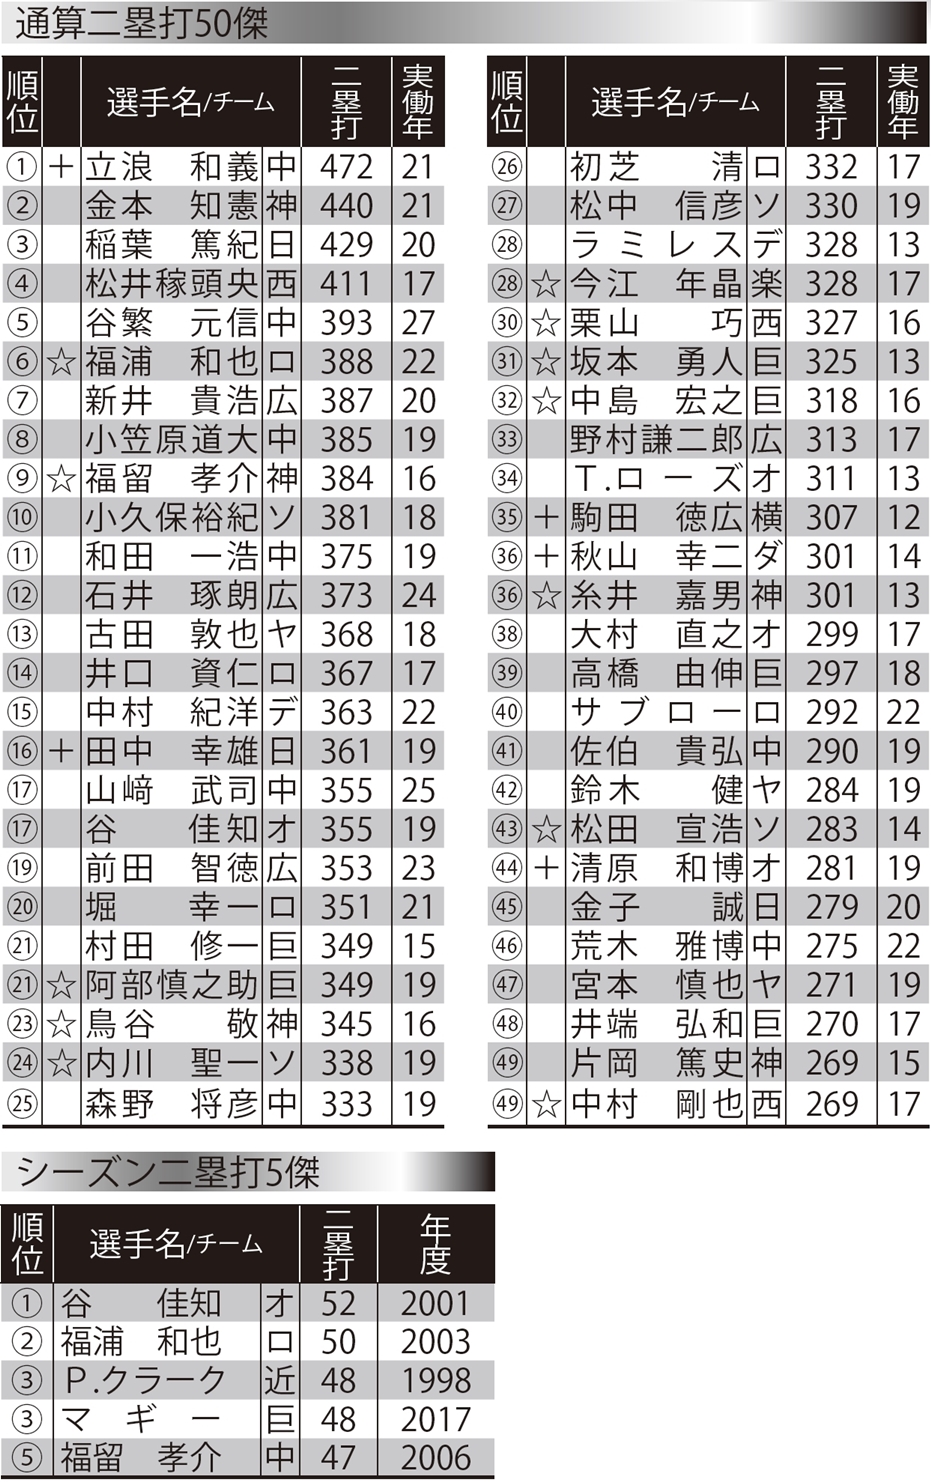 二塁打トップの立浪が日本記録を達成 三塁打は1本差で村松が1位 二塁打 三塁打平成ランキング 野球コラム 週刊ベースボールonline